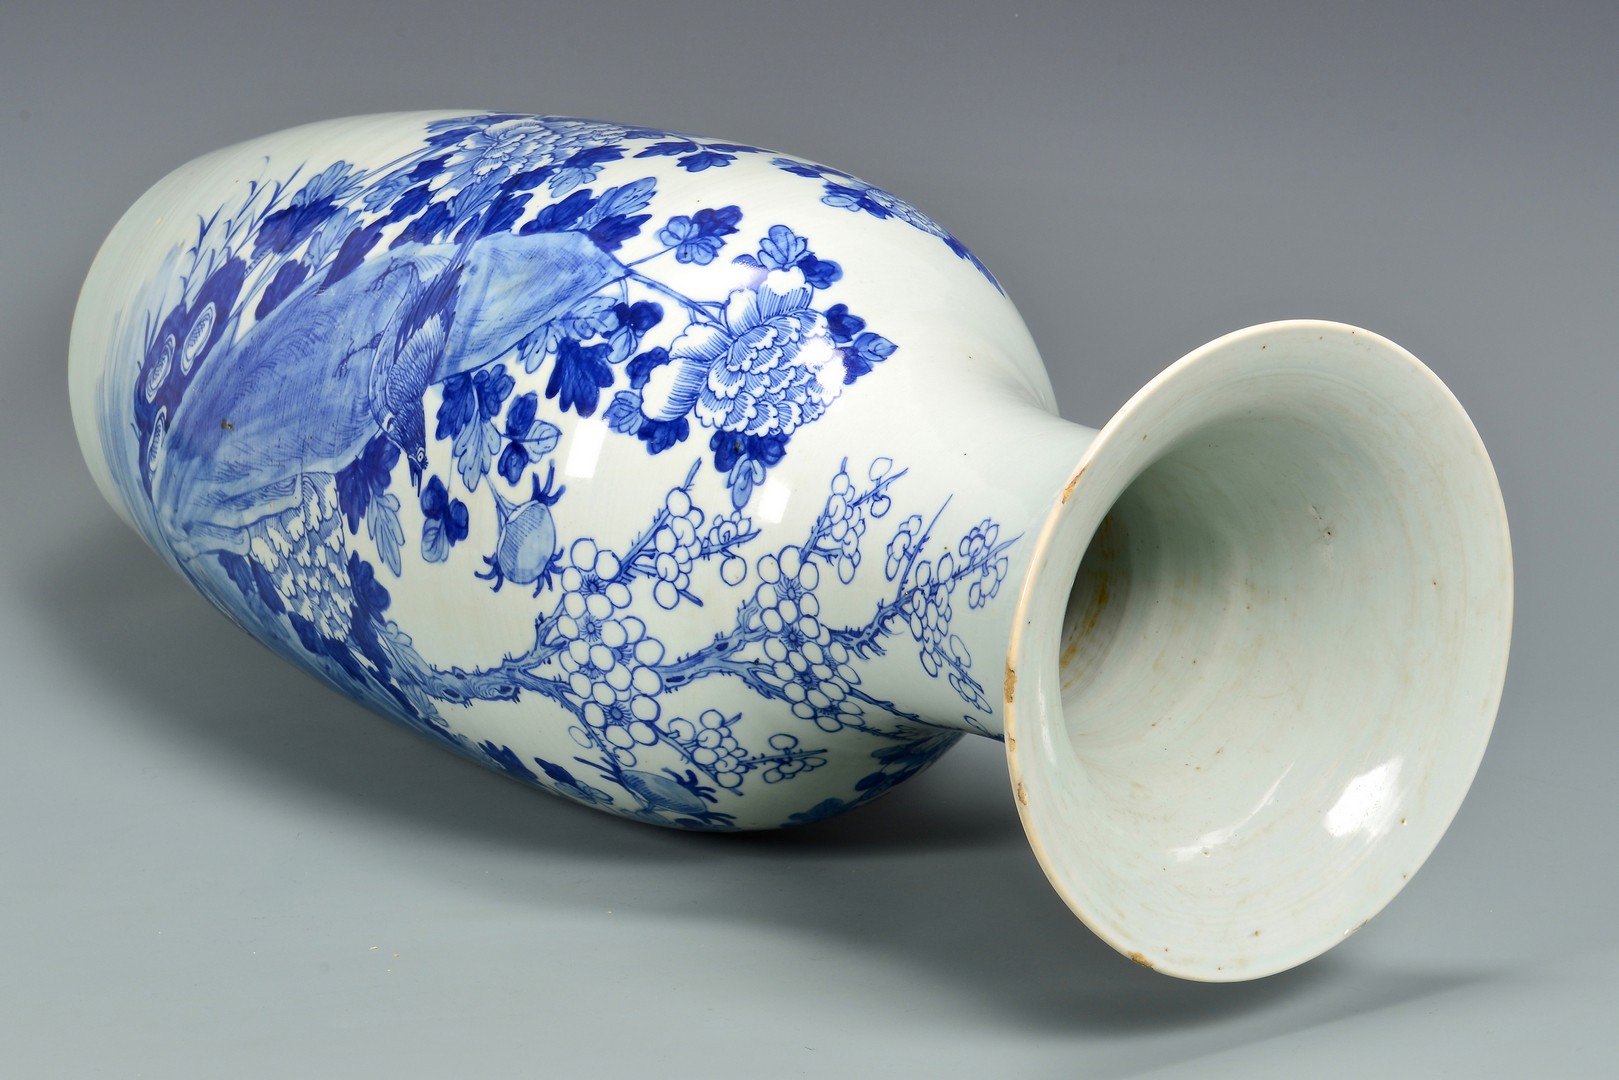 Lot 774: Large Chinese Blue & White Porcelain Vase